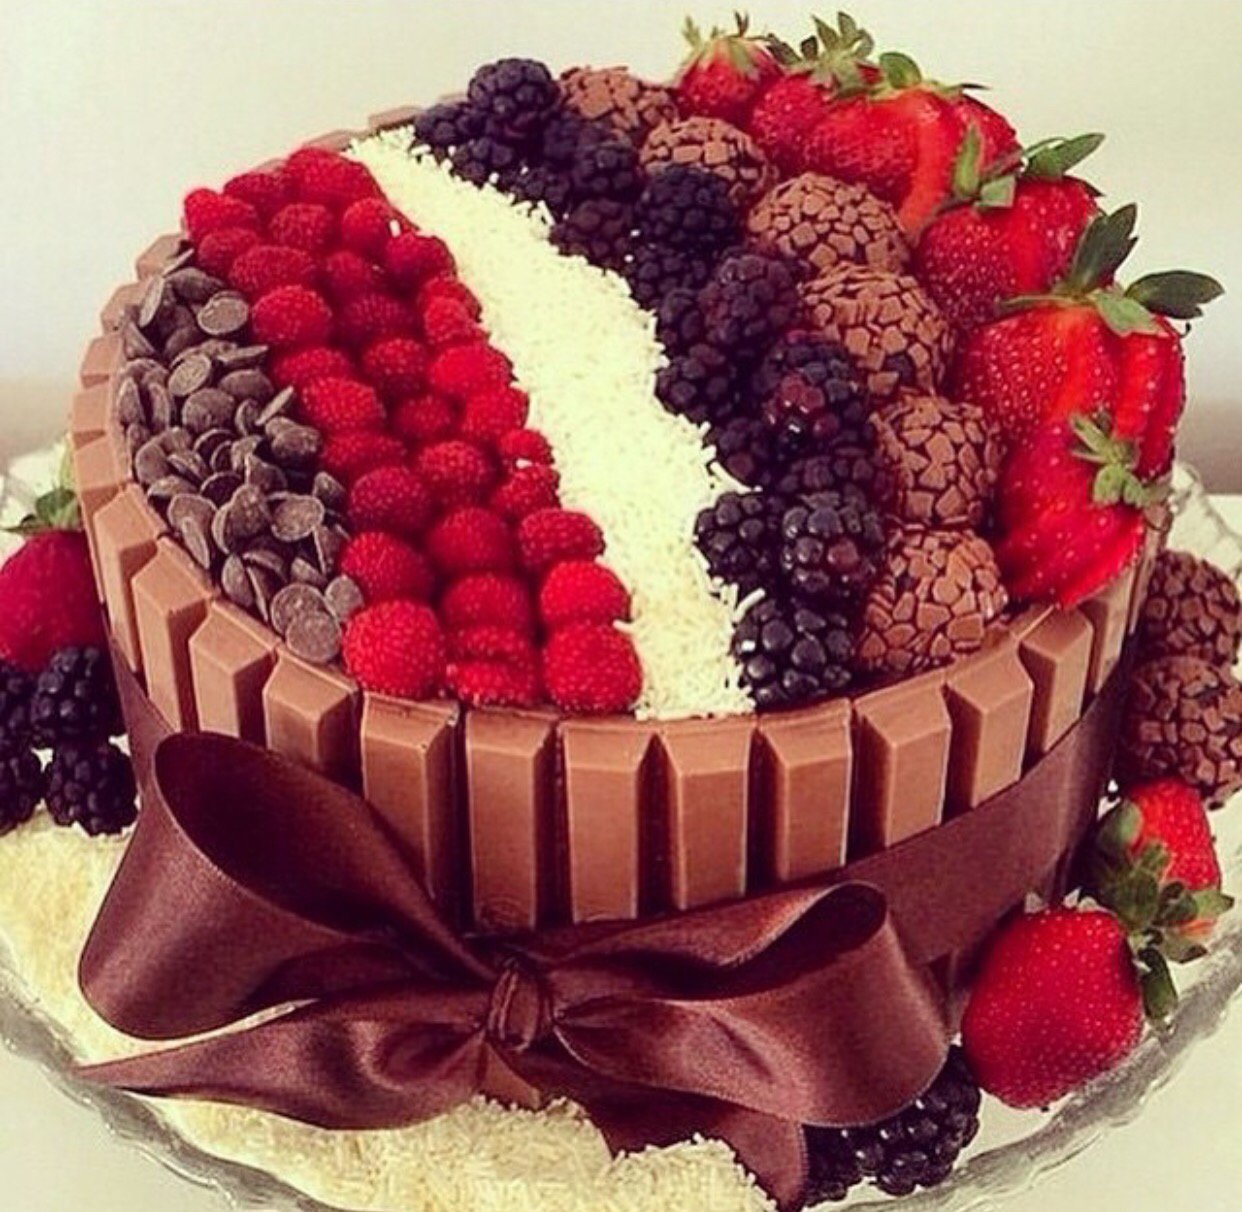 Над воротами занялась красивее торты. Красивые торты. Красивый торт с фруктами. Красивые торты на день рождения. Шикарный торт на день рождения.